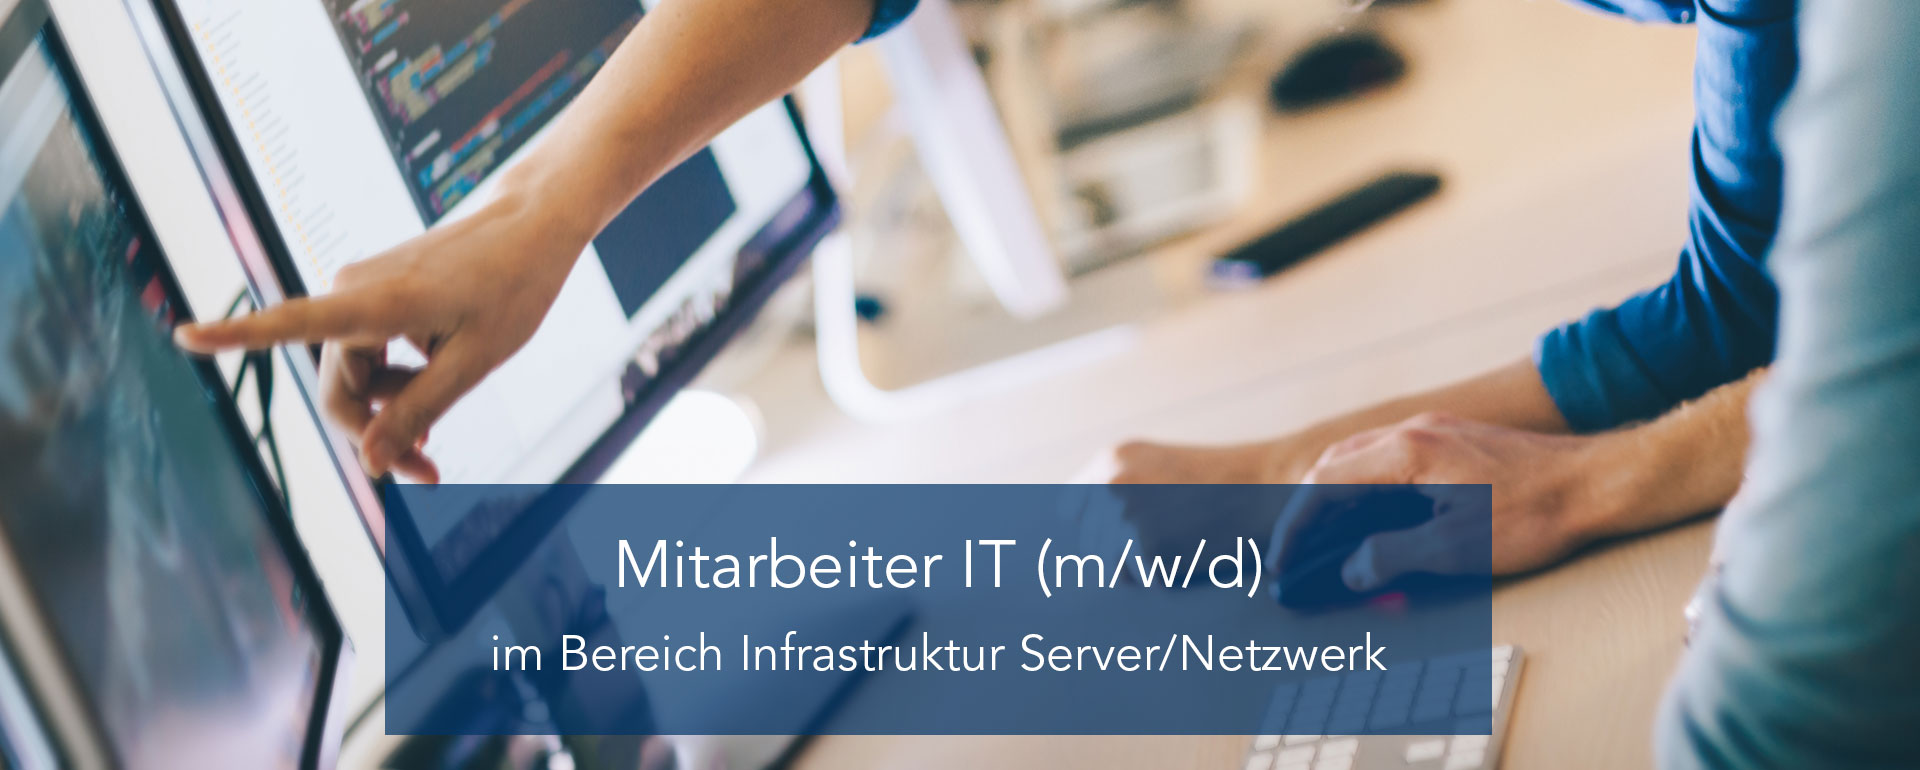 Mitarbeiter IT (m/w/d) im Bereich Infrastruktur Server/Netzwerk